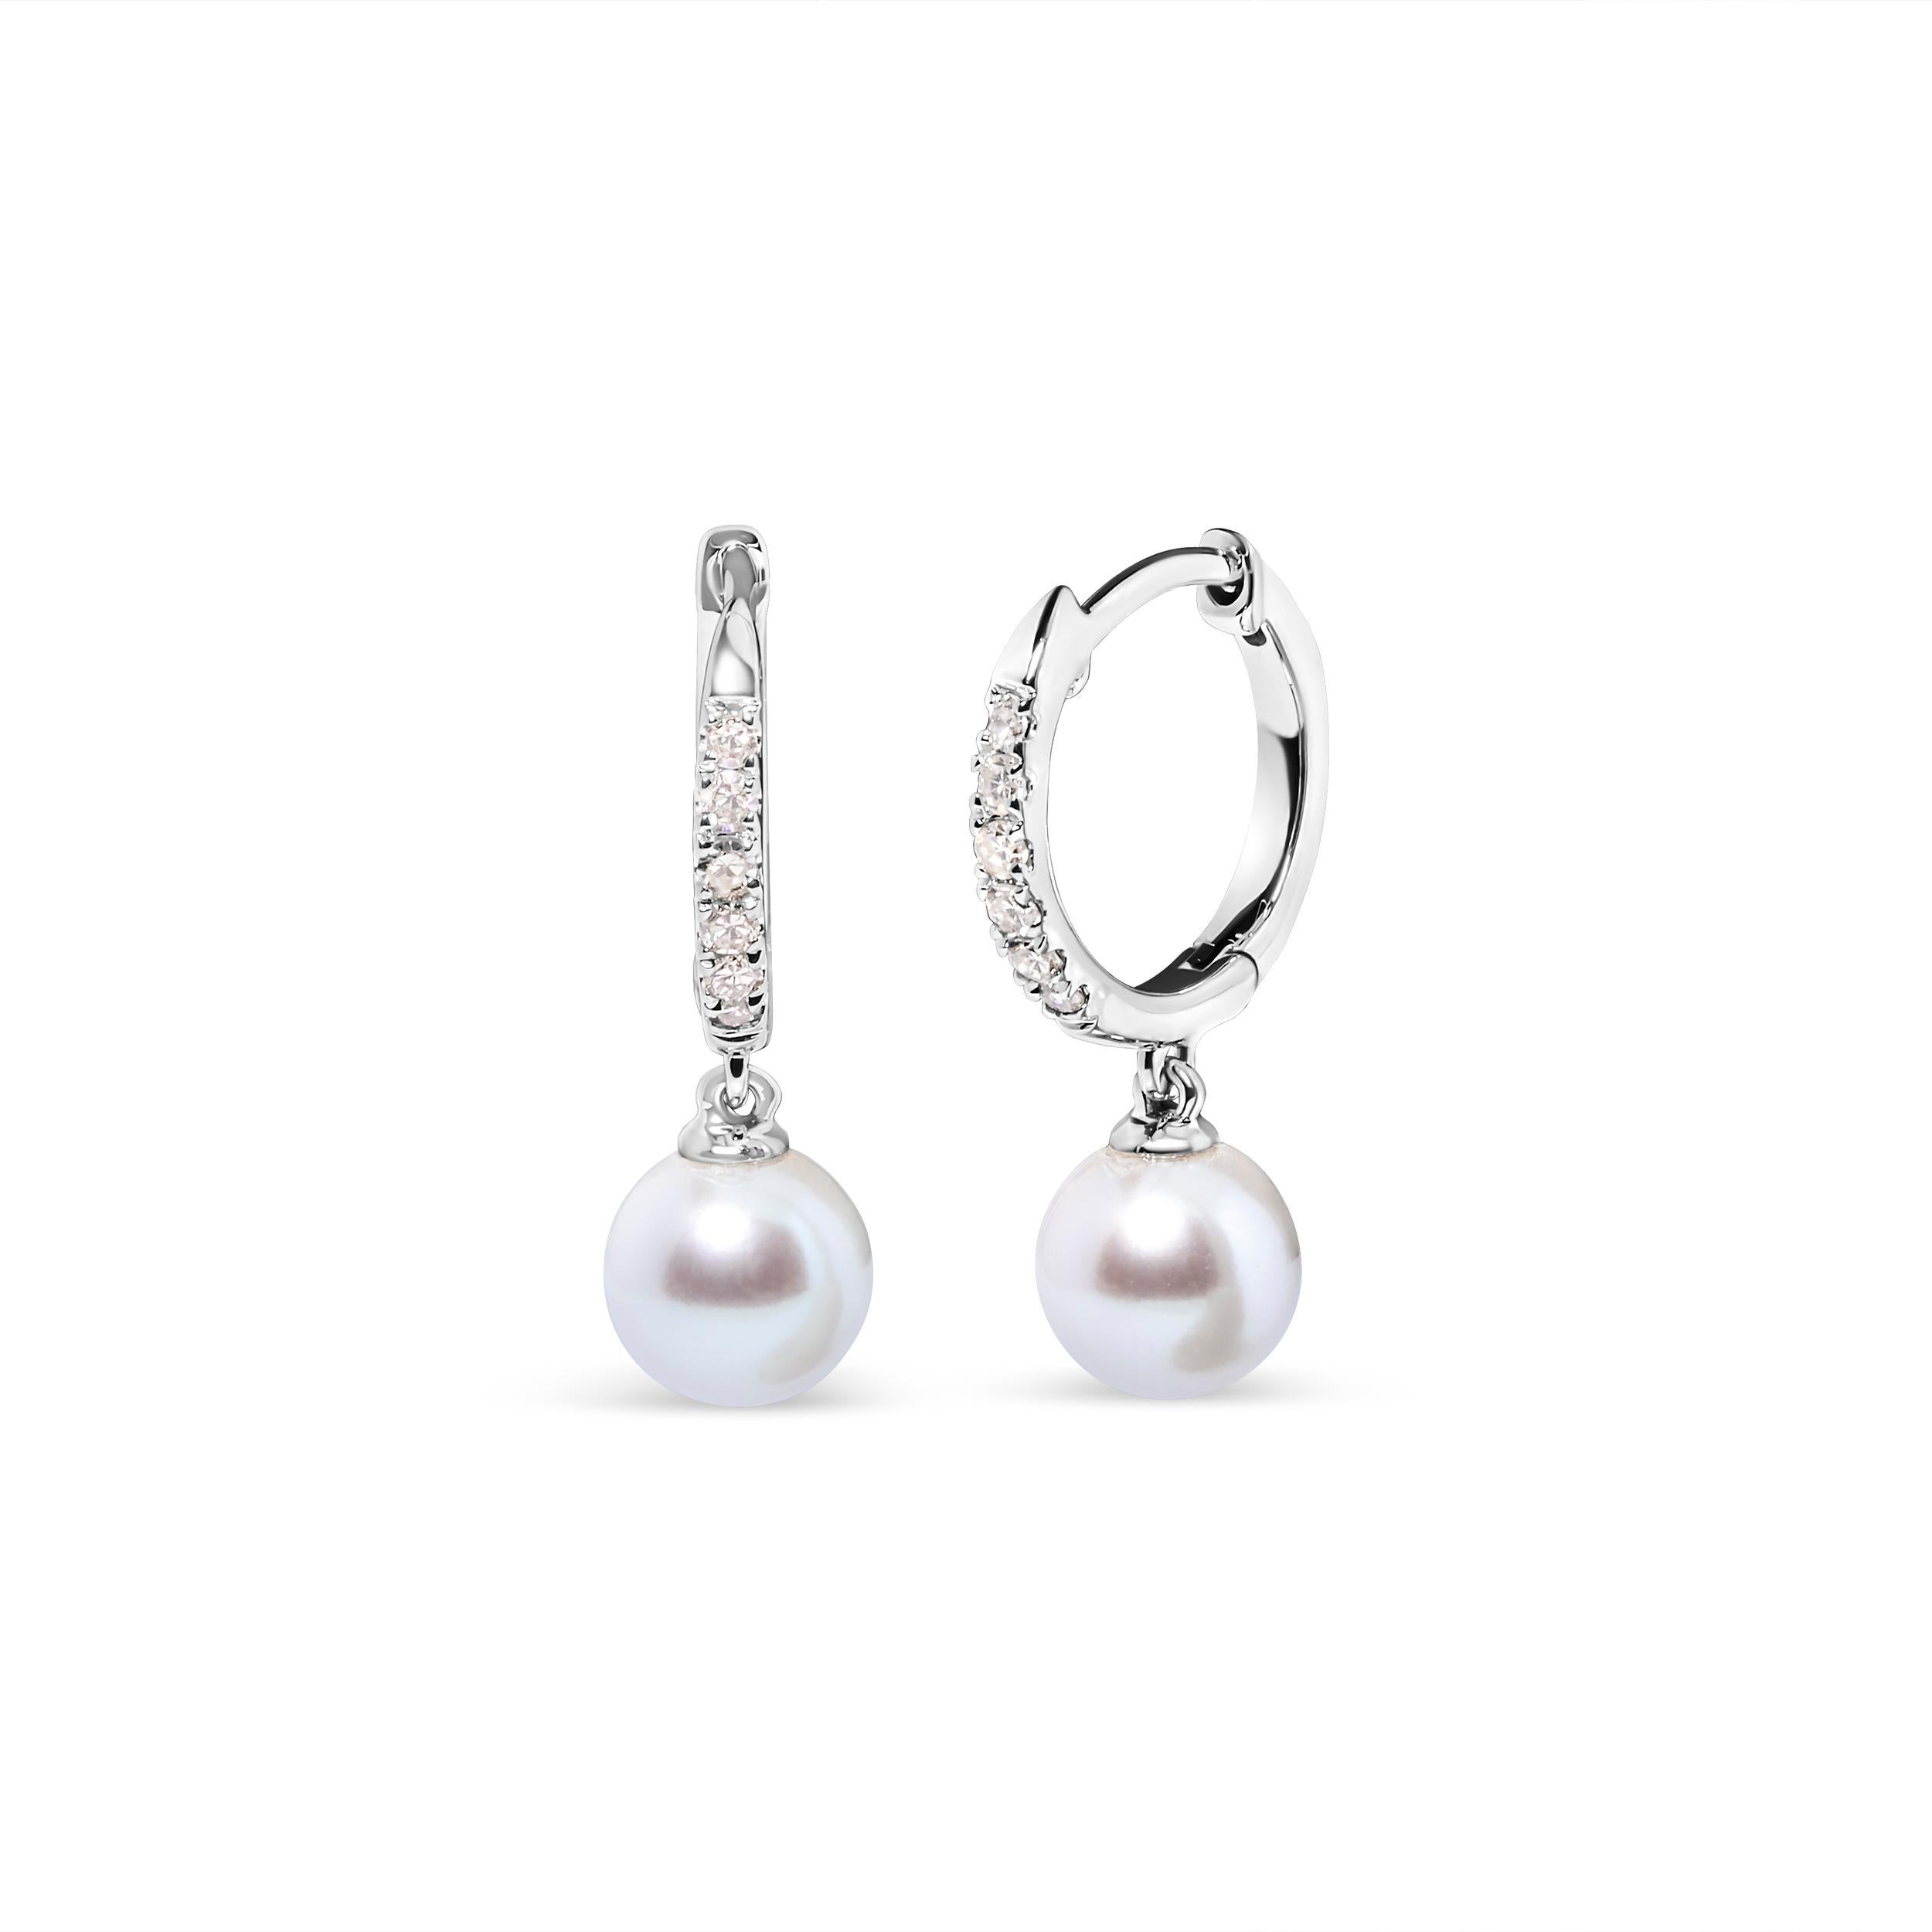 Ein fesselndes Meisterwerk für Frauen, die Eleganz und Raffinesse suchen. Diese exquisiten Perlenohrringe sind mit einer Reihe von 12 runden Diamanten besetzt. Die Diamanten, die aus der Natur stammen, haben eine brillante H-I Farbe und sind in